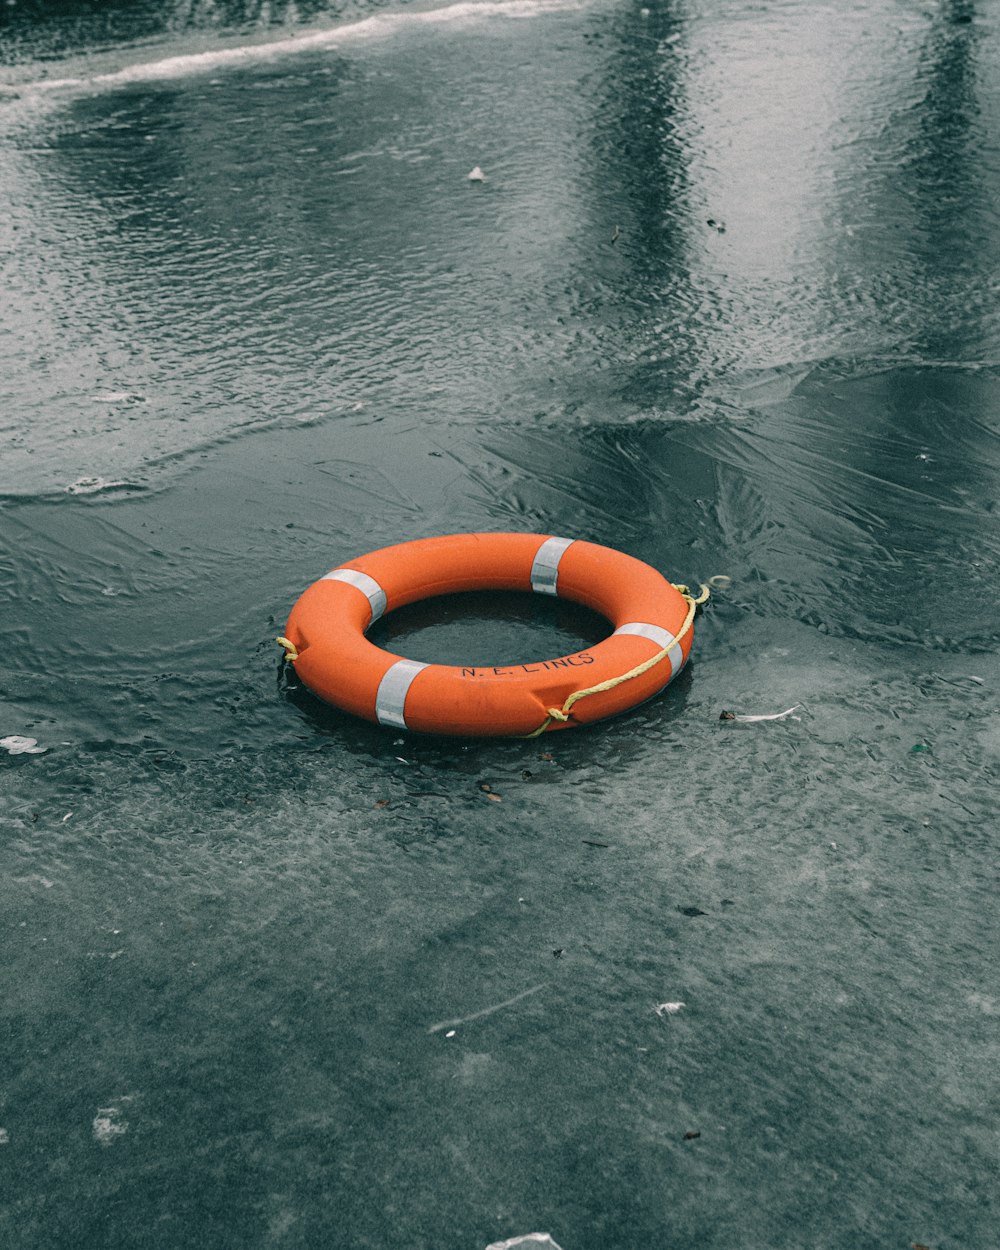 anel inflável laranja na água